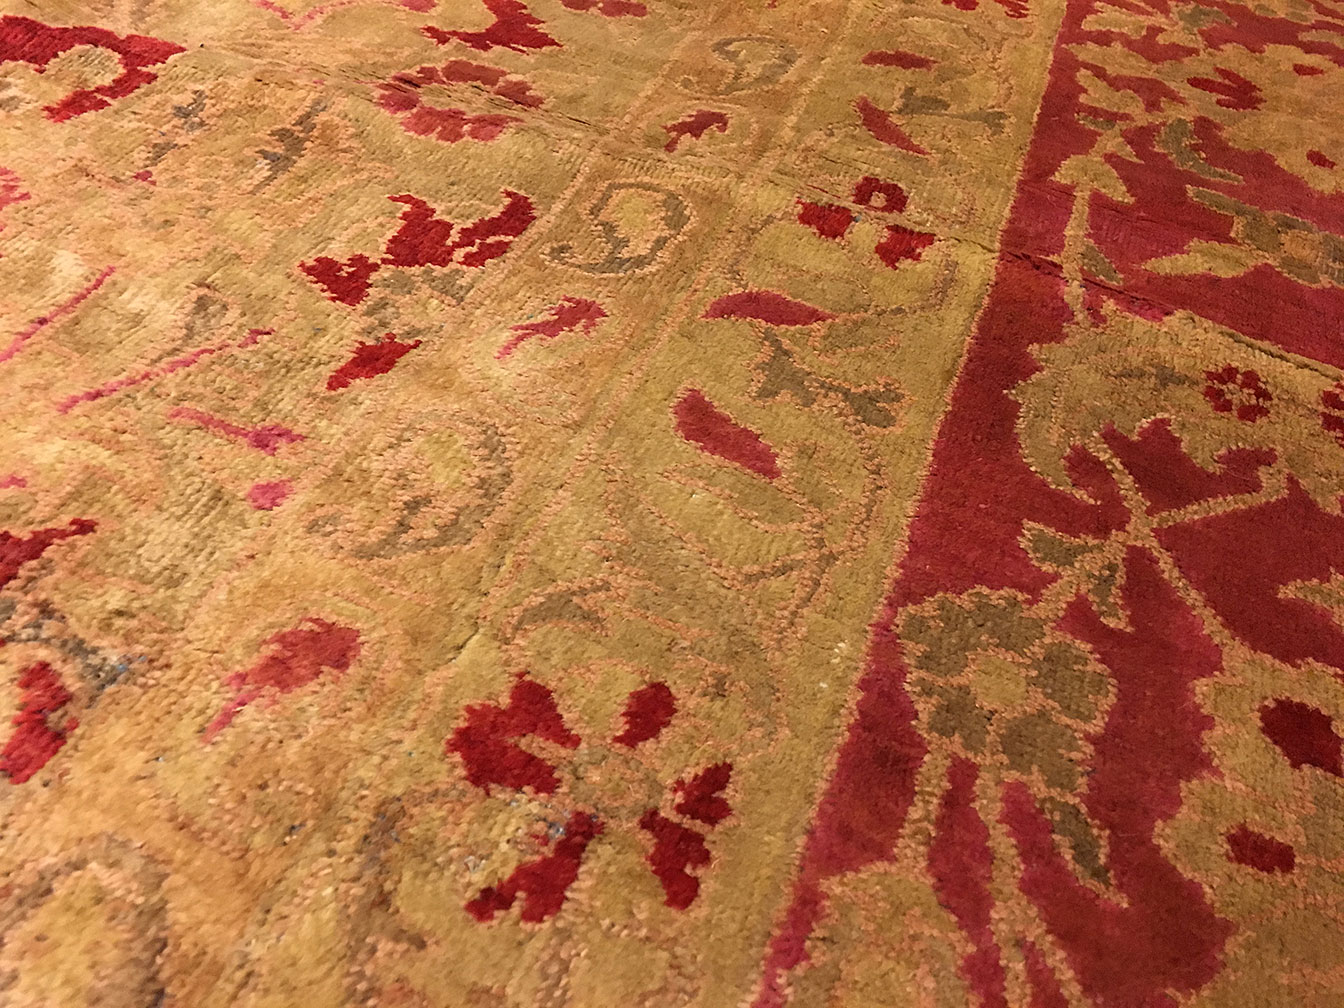 Antique sultan abad Carpet - # 732